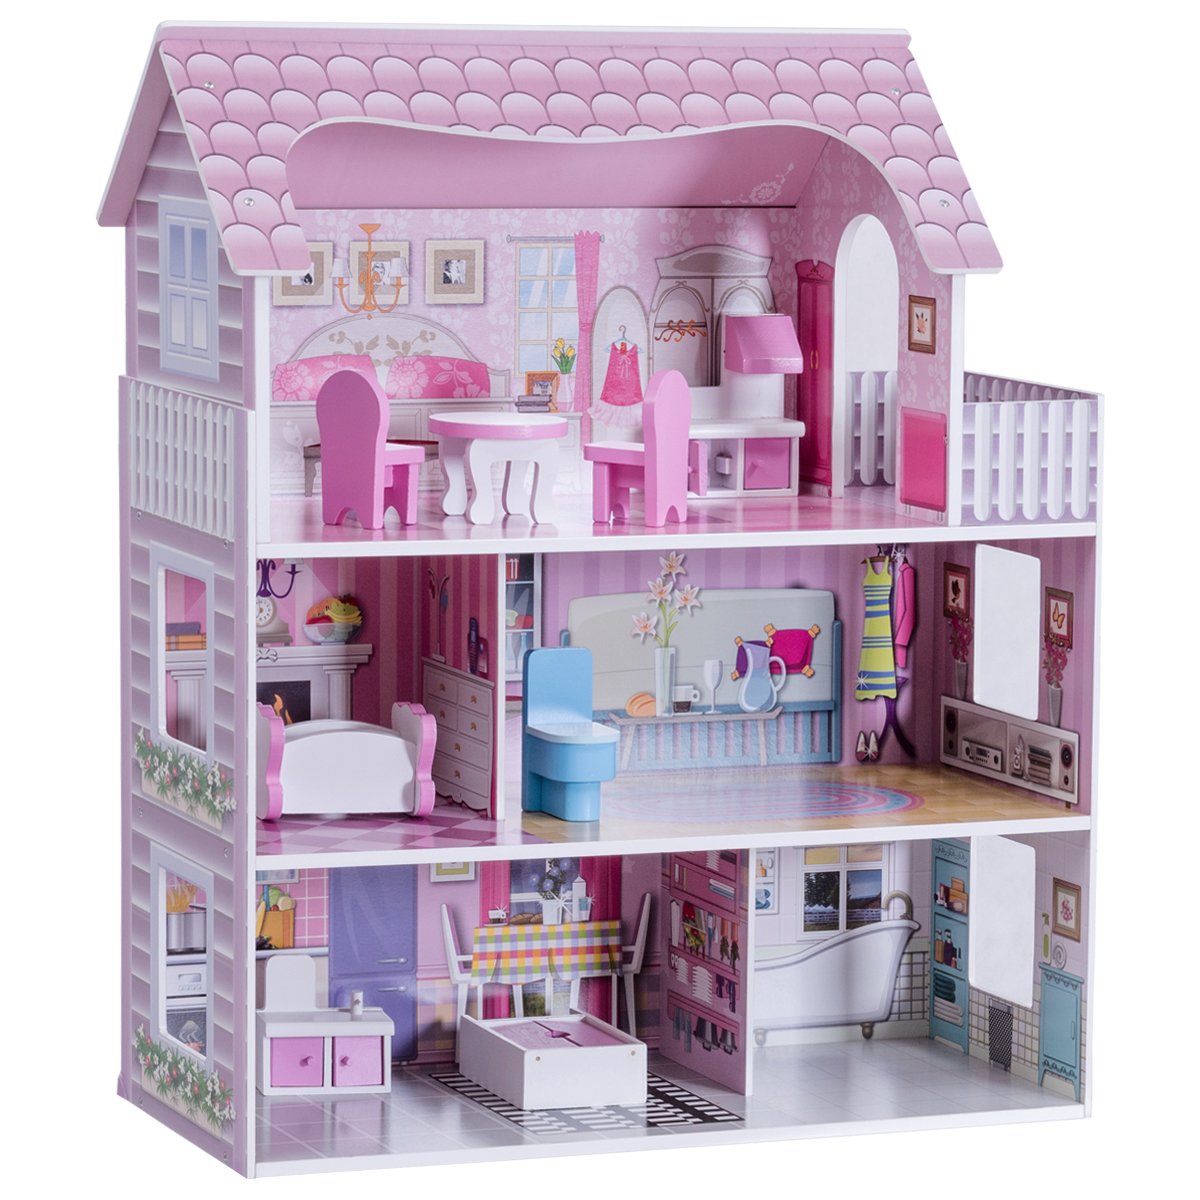 DREAMADE Puppenhaus Holz, Holzpuppenhaus mit Zubehör und Möbel, Dollhouse Puppenhaus Puppen für Kinder (Modell 1)